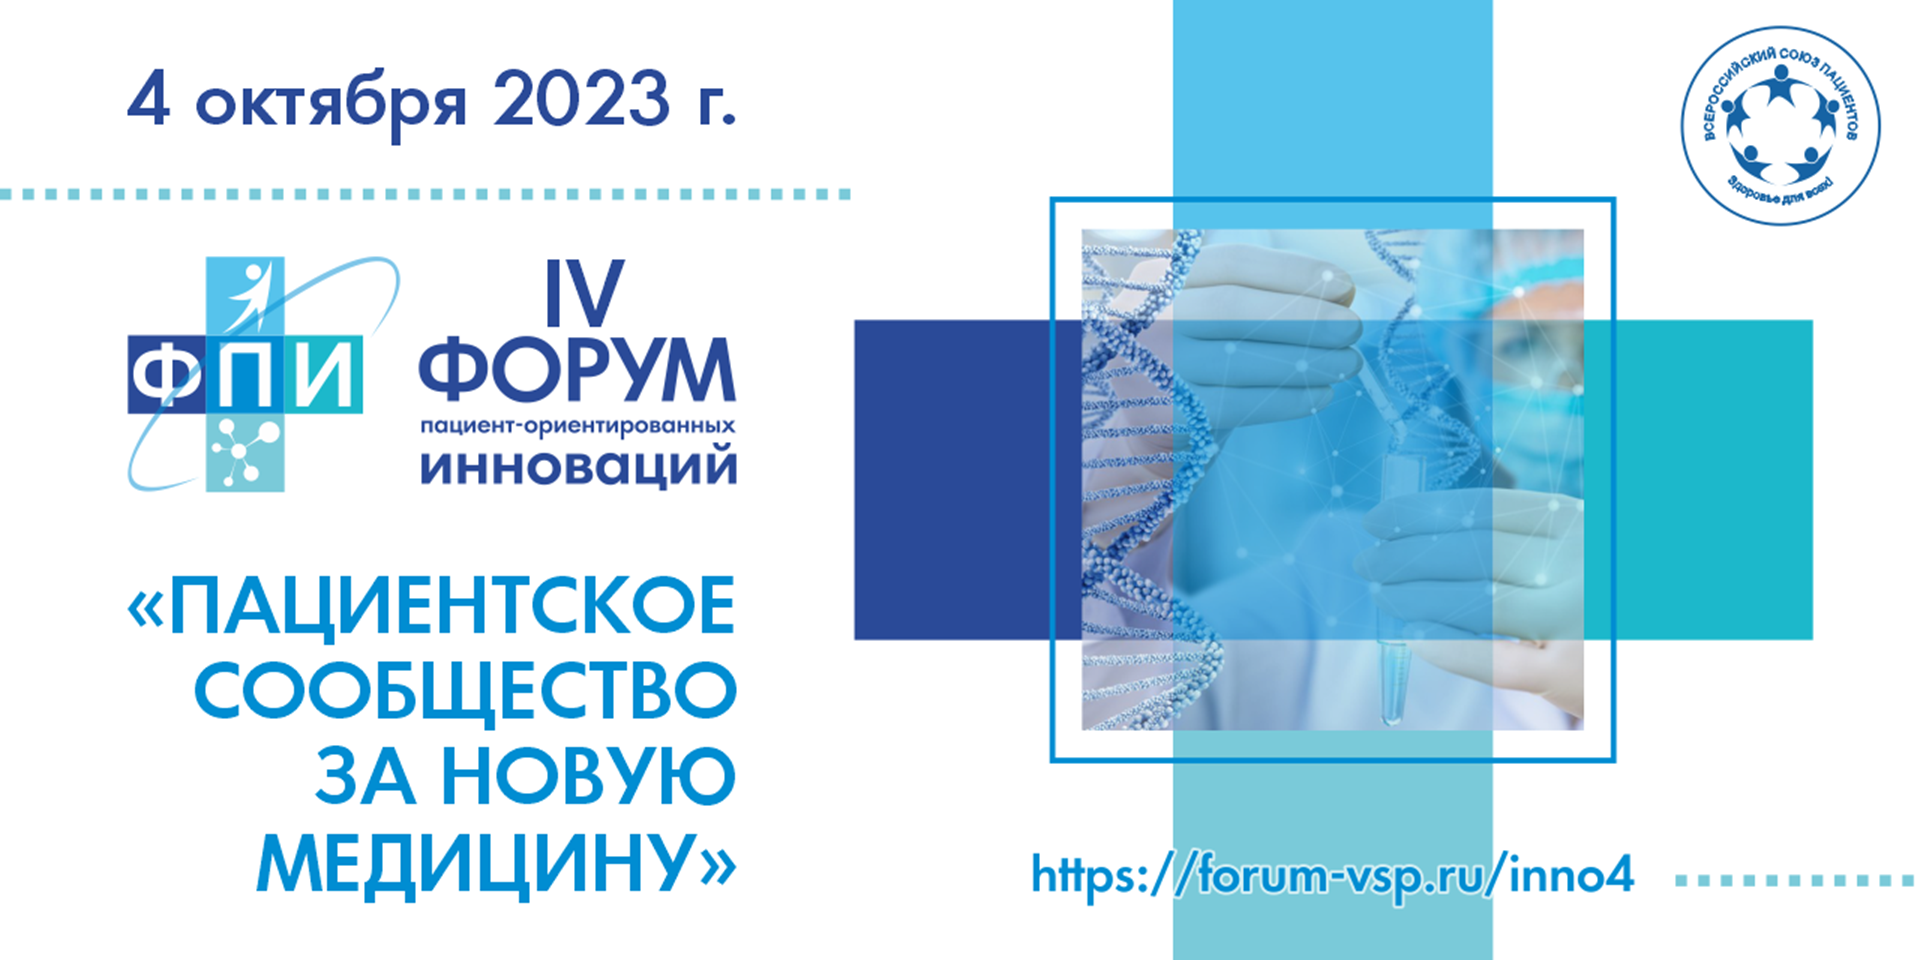 06.10.2023 06.10.2023 Итоги IV форума пациенториентированных инноваций